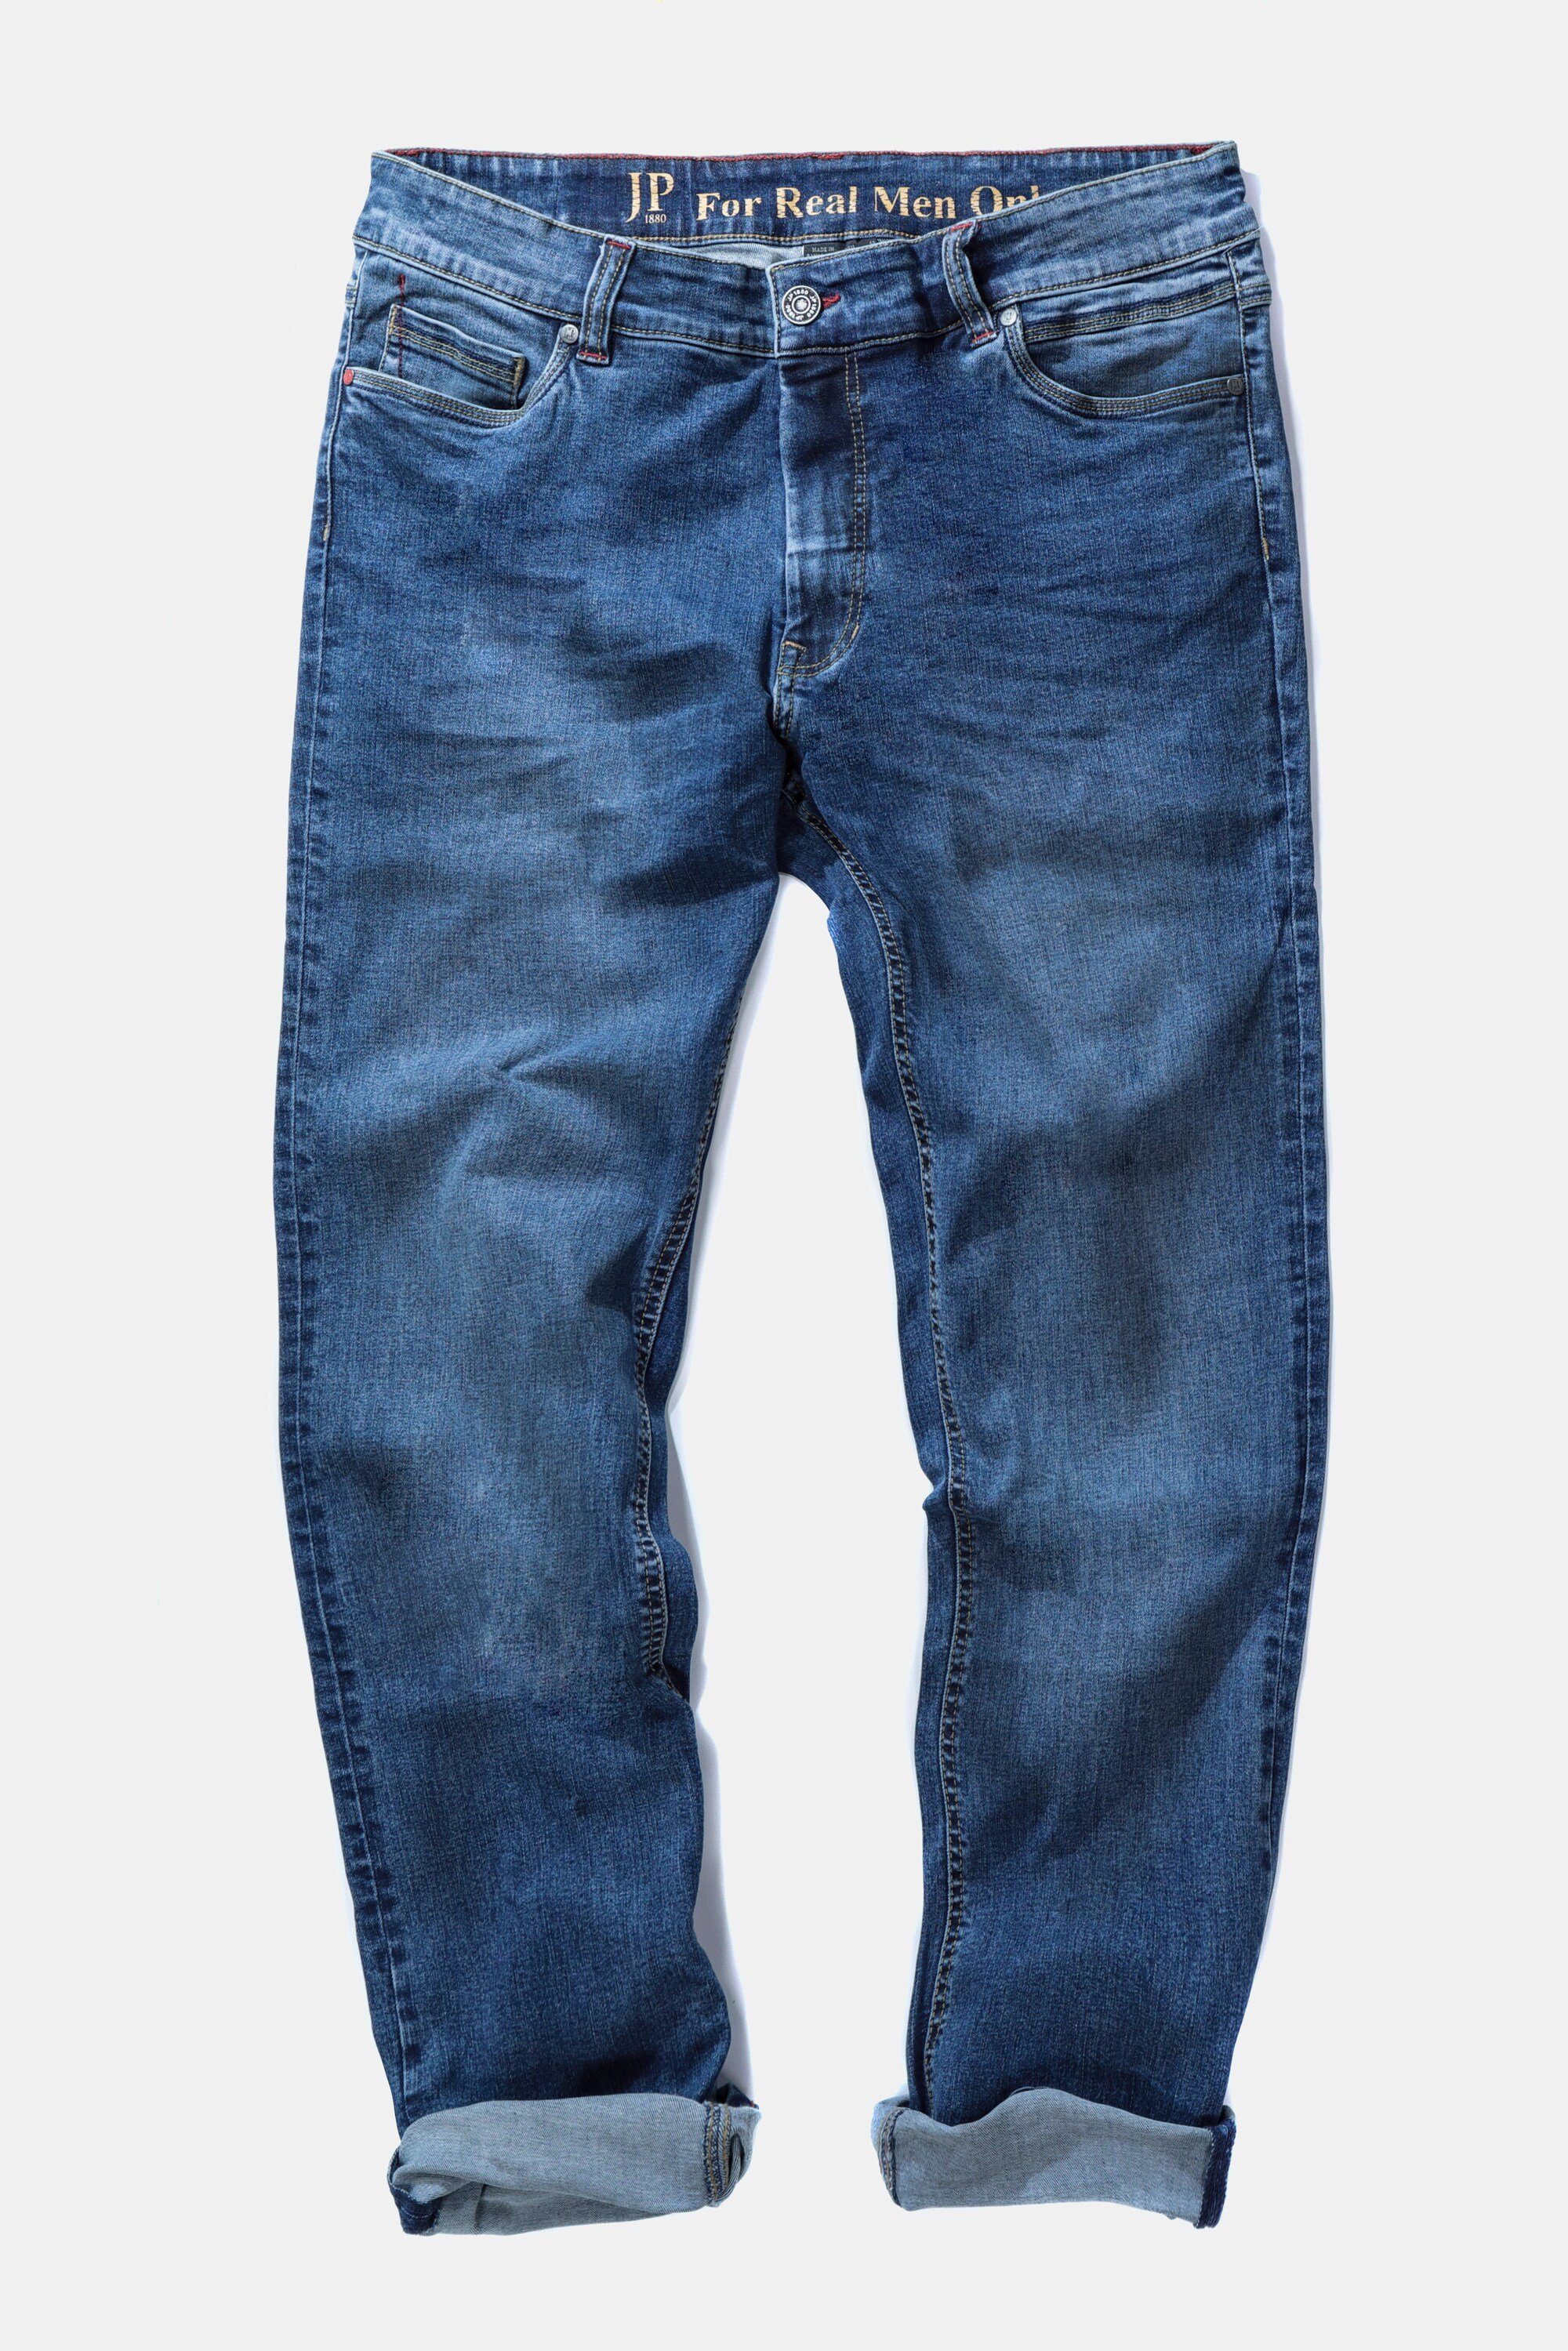 FLEXNAMIC® denim bis JP1880 Fit 70/35 Jeans 5-Pocket-Jeans Denim Gr. blue Straight